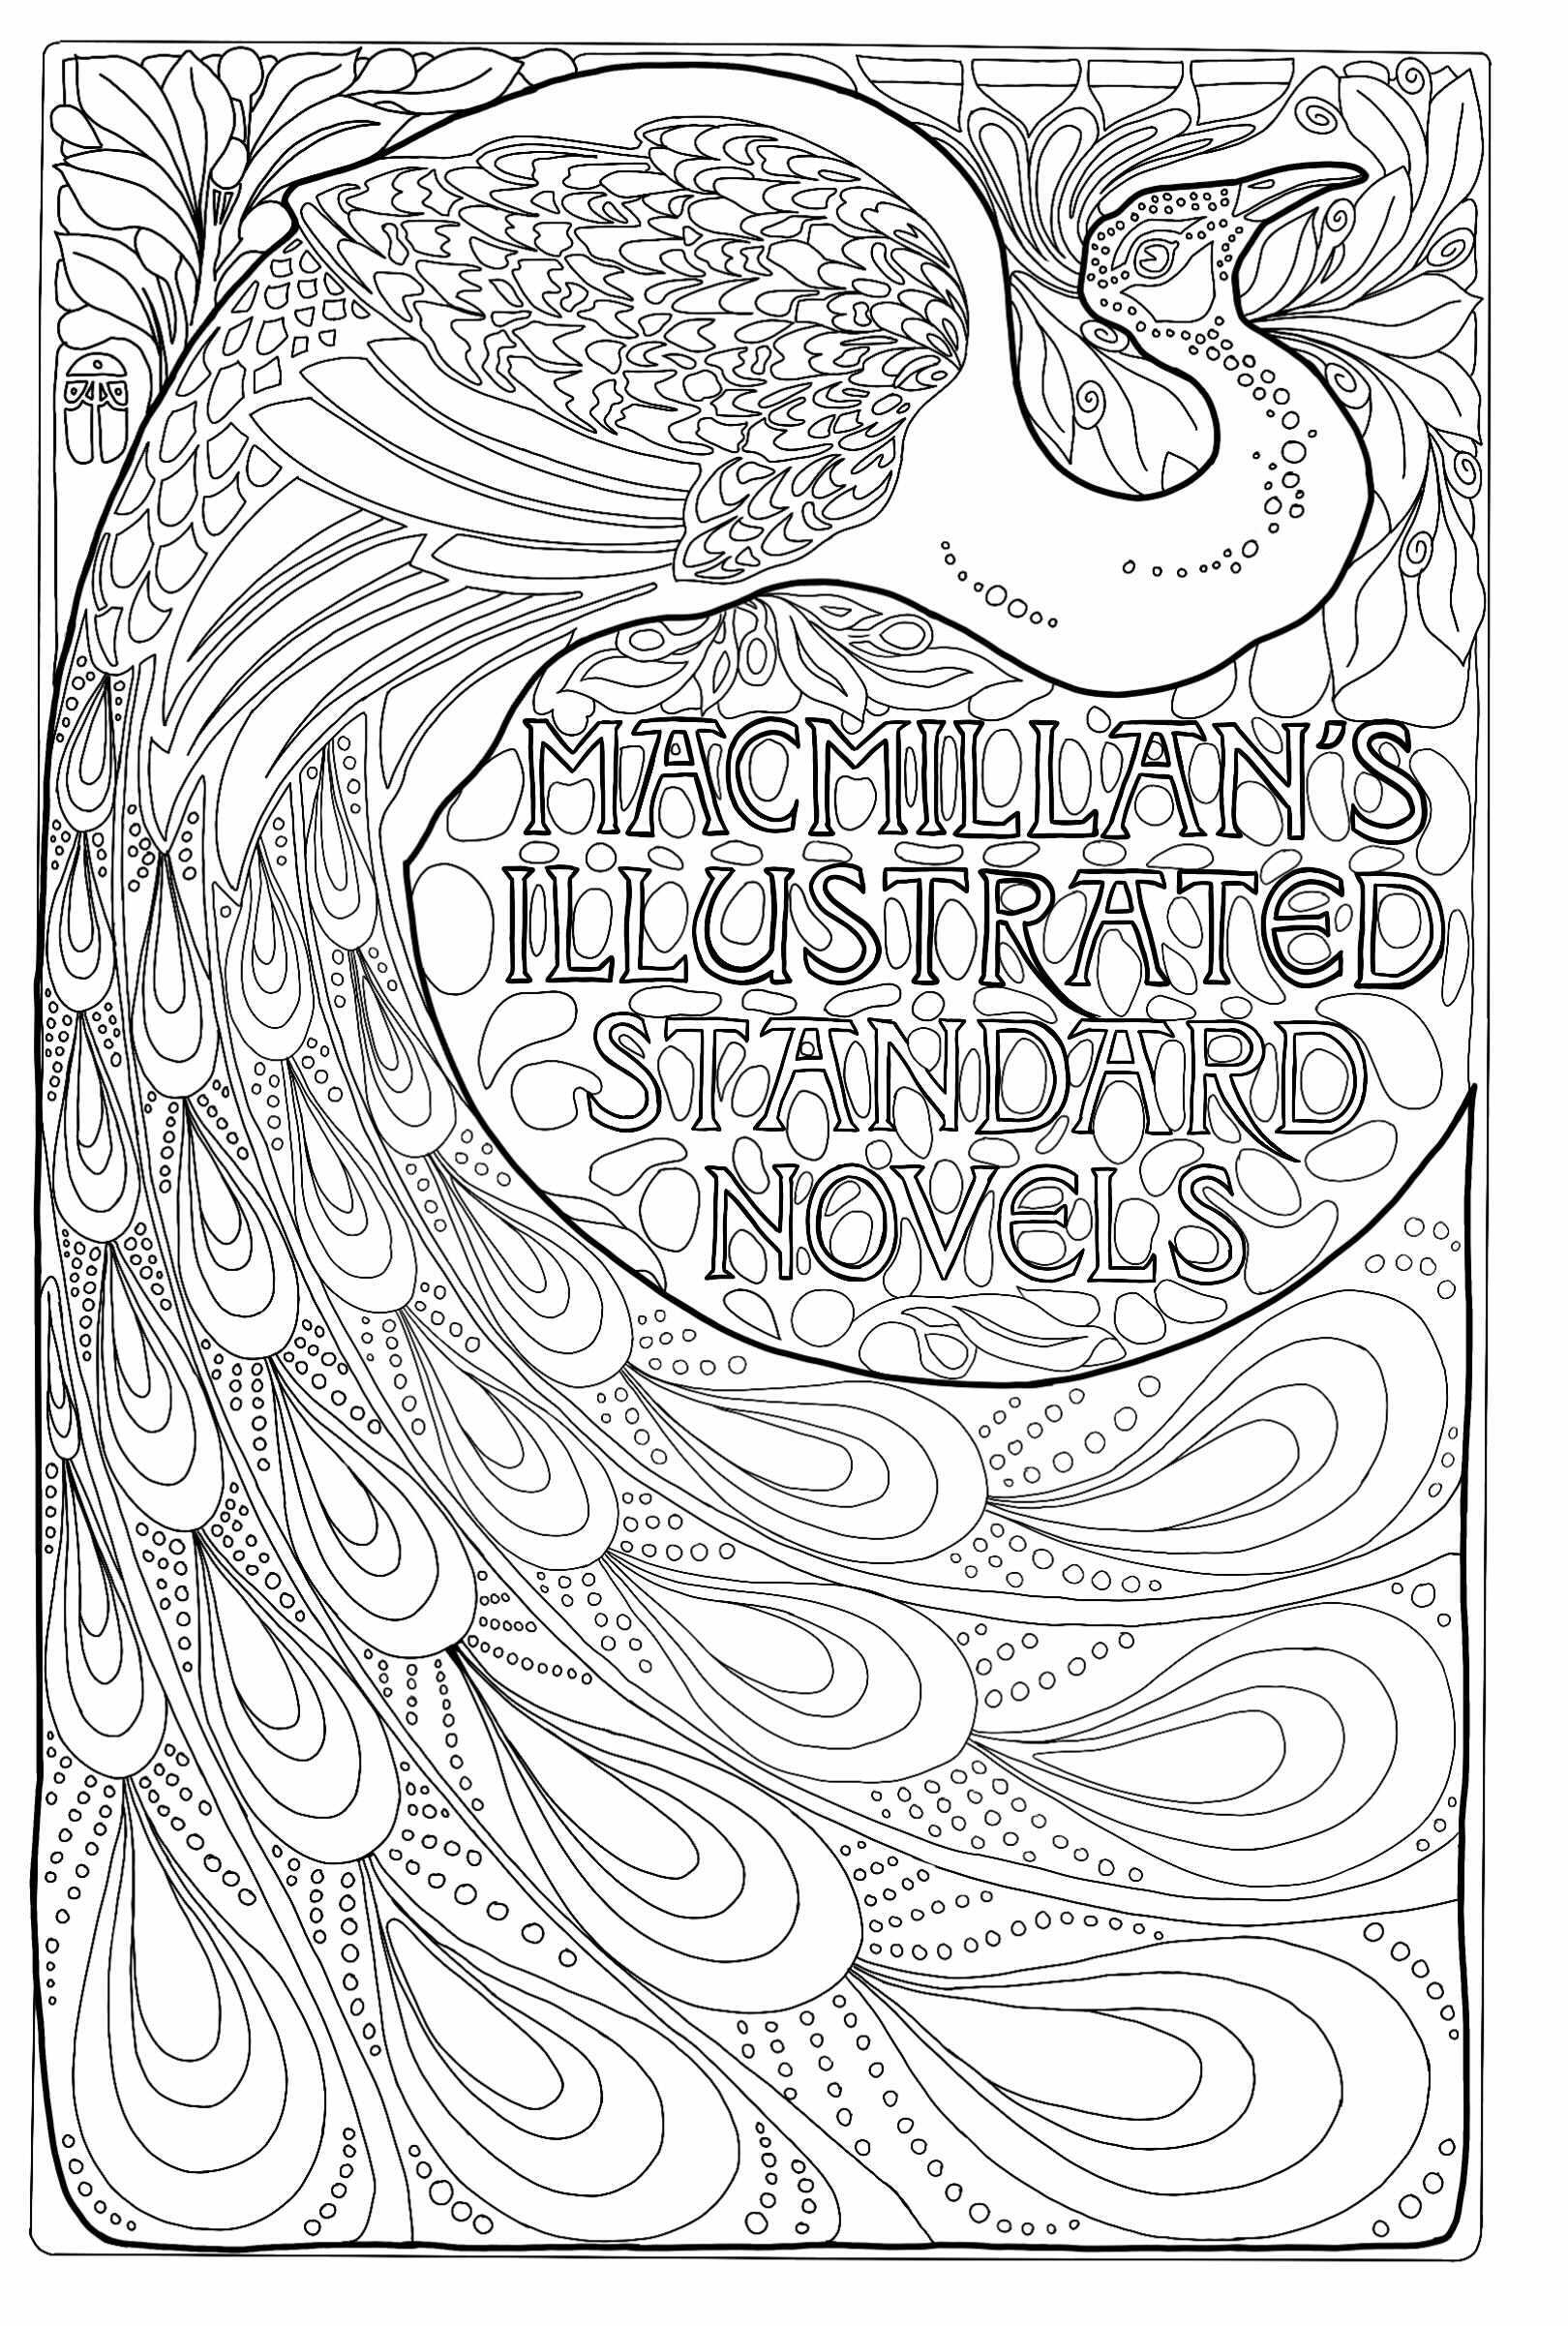 MacMillan's Illustrated Standard Novels: Portada Art Nouveau con pavo real (1896). Creación de Albert Angus Turbayne, ilustrador estadounidense (1866, 1940).